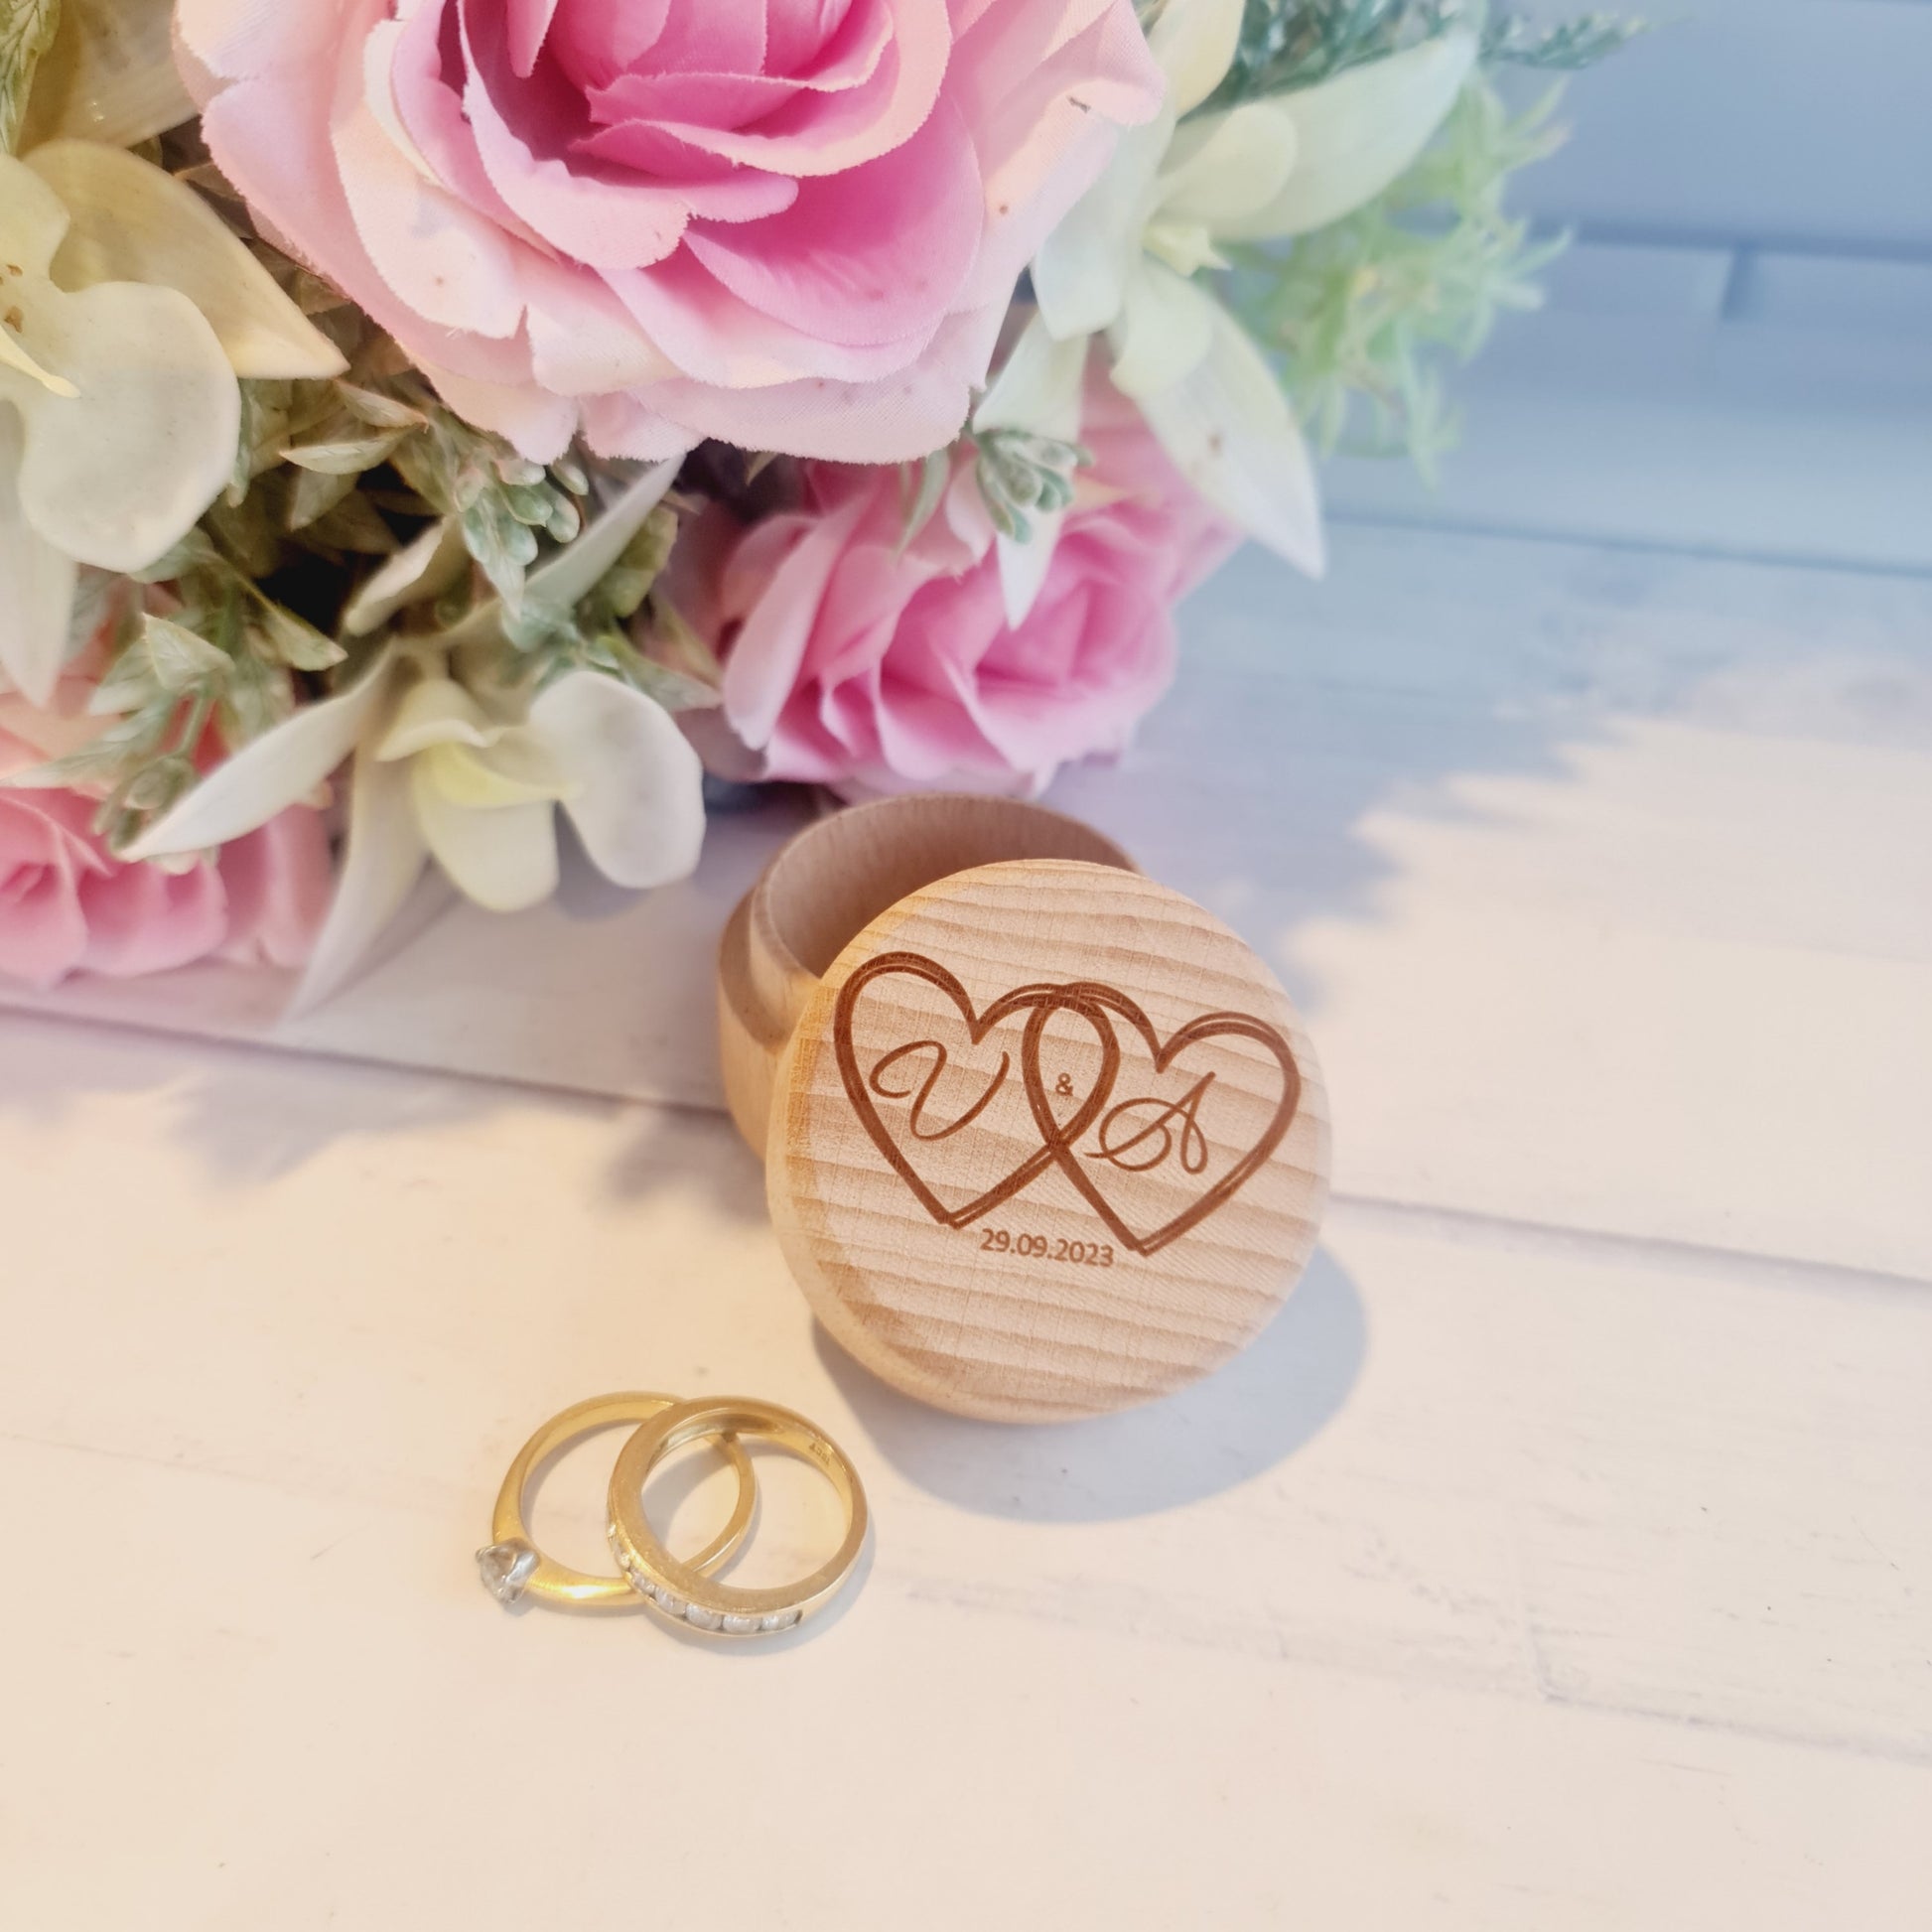 Engraved Wedding Ring Box